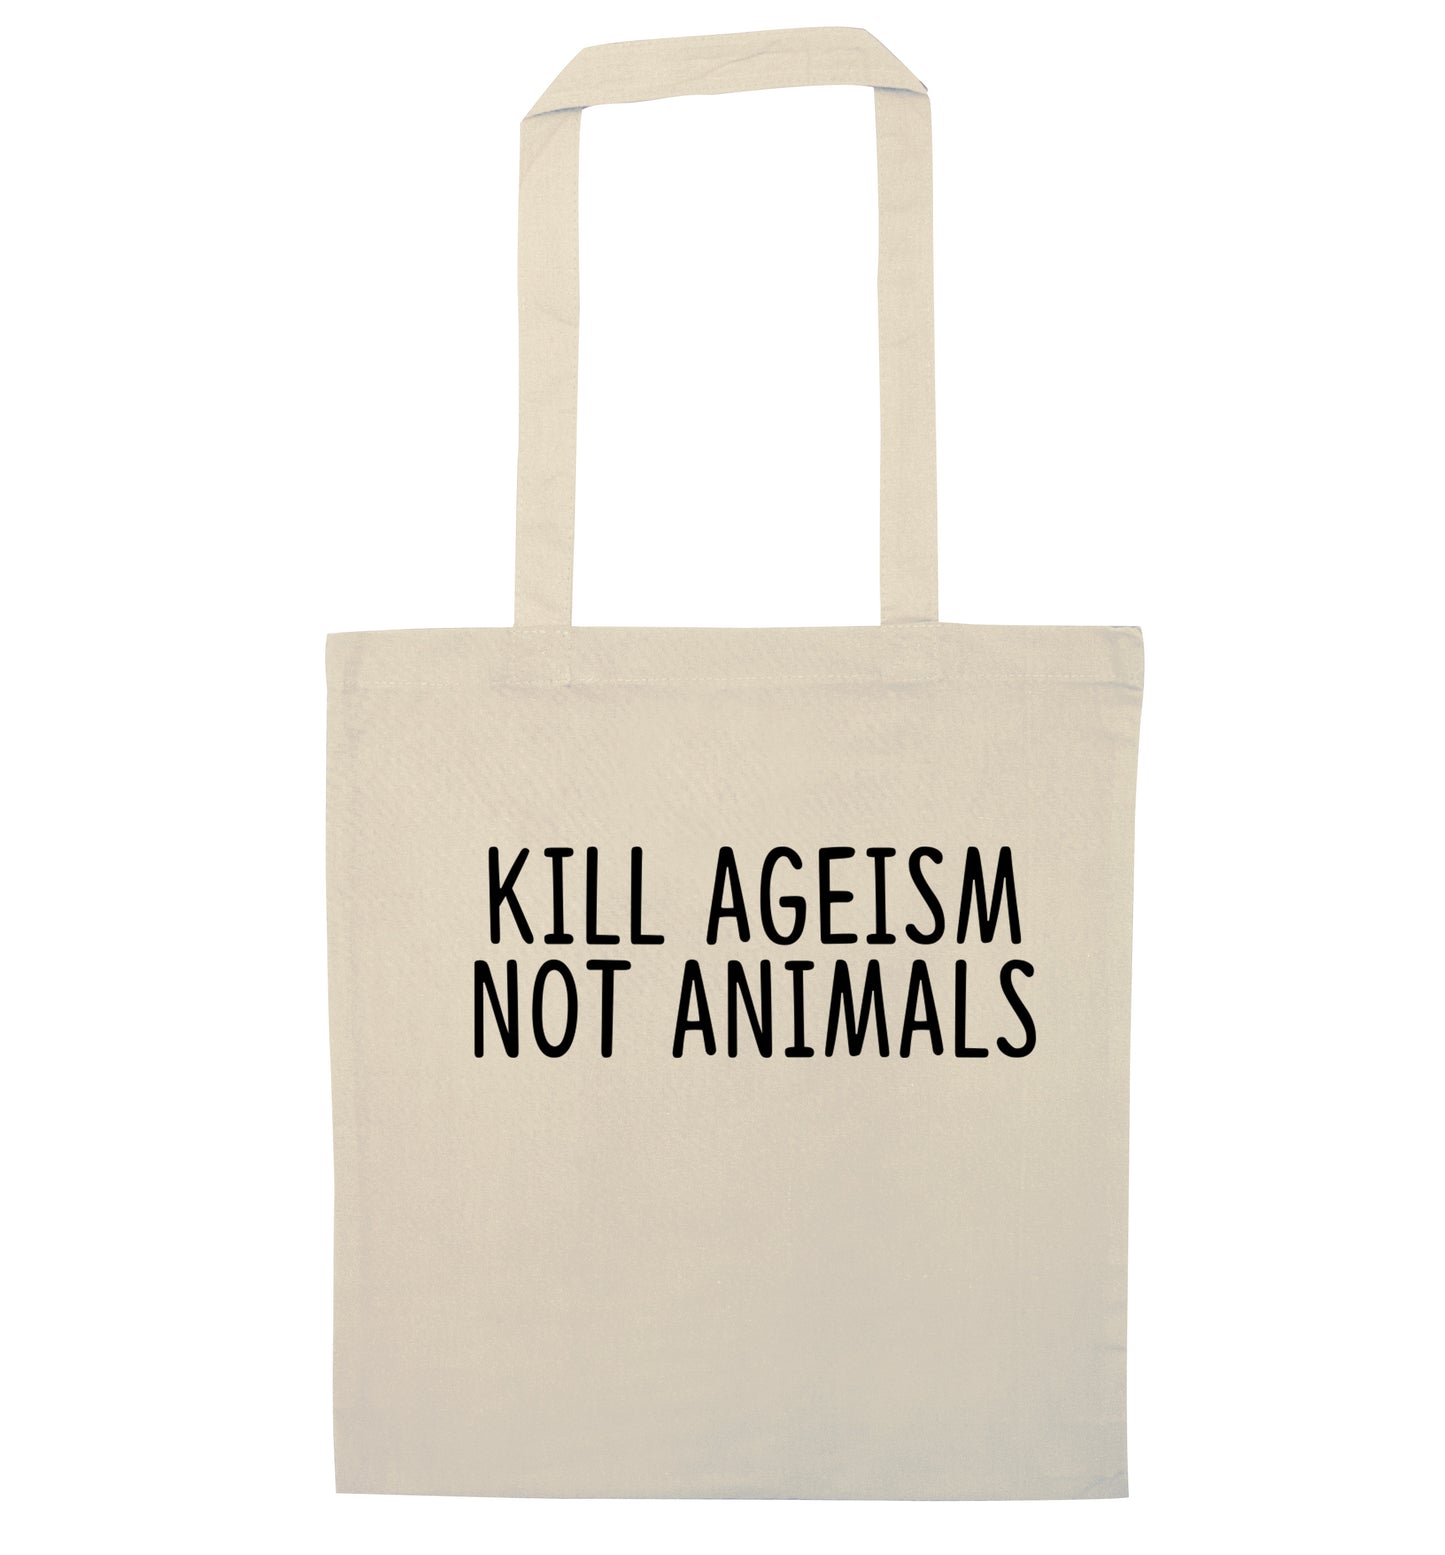 Kill Ageism Not Animals natural tote bag